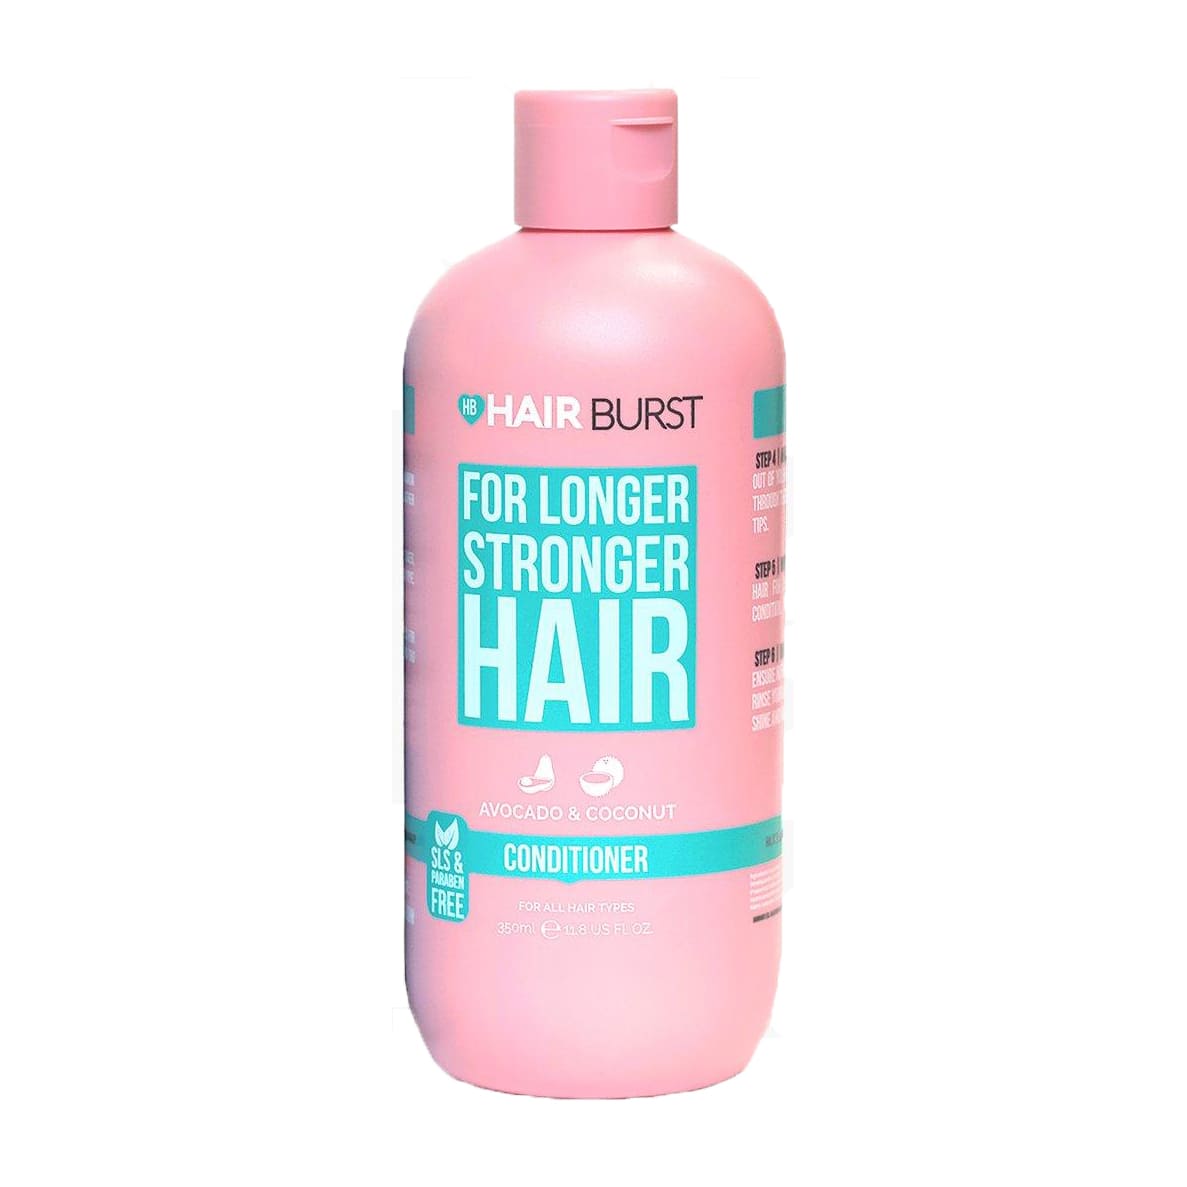 Hair Burst For Longer Stronger Hair Avocado & Coconut Conditioner - 350ml - Bloom Pharmacy